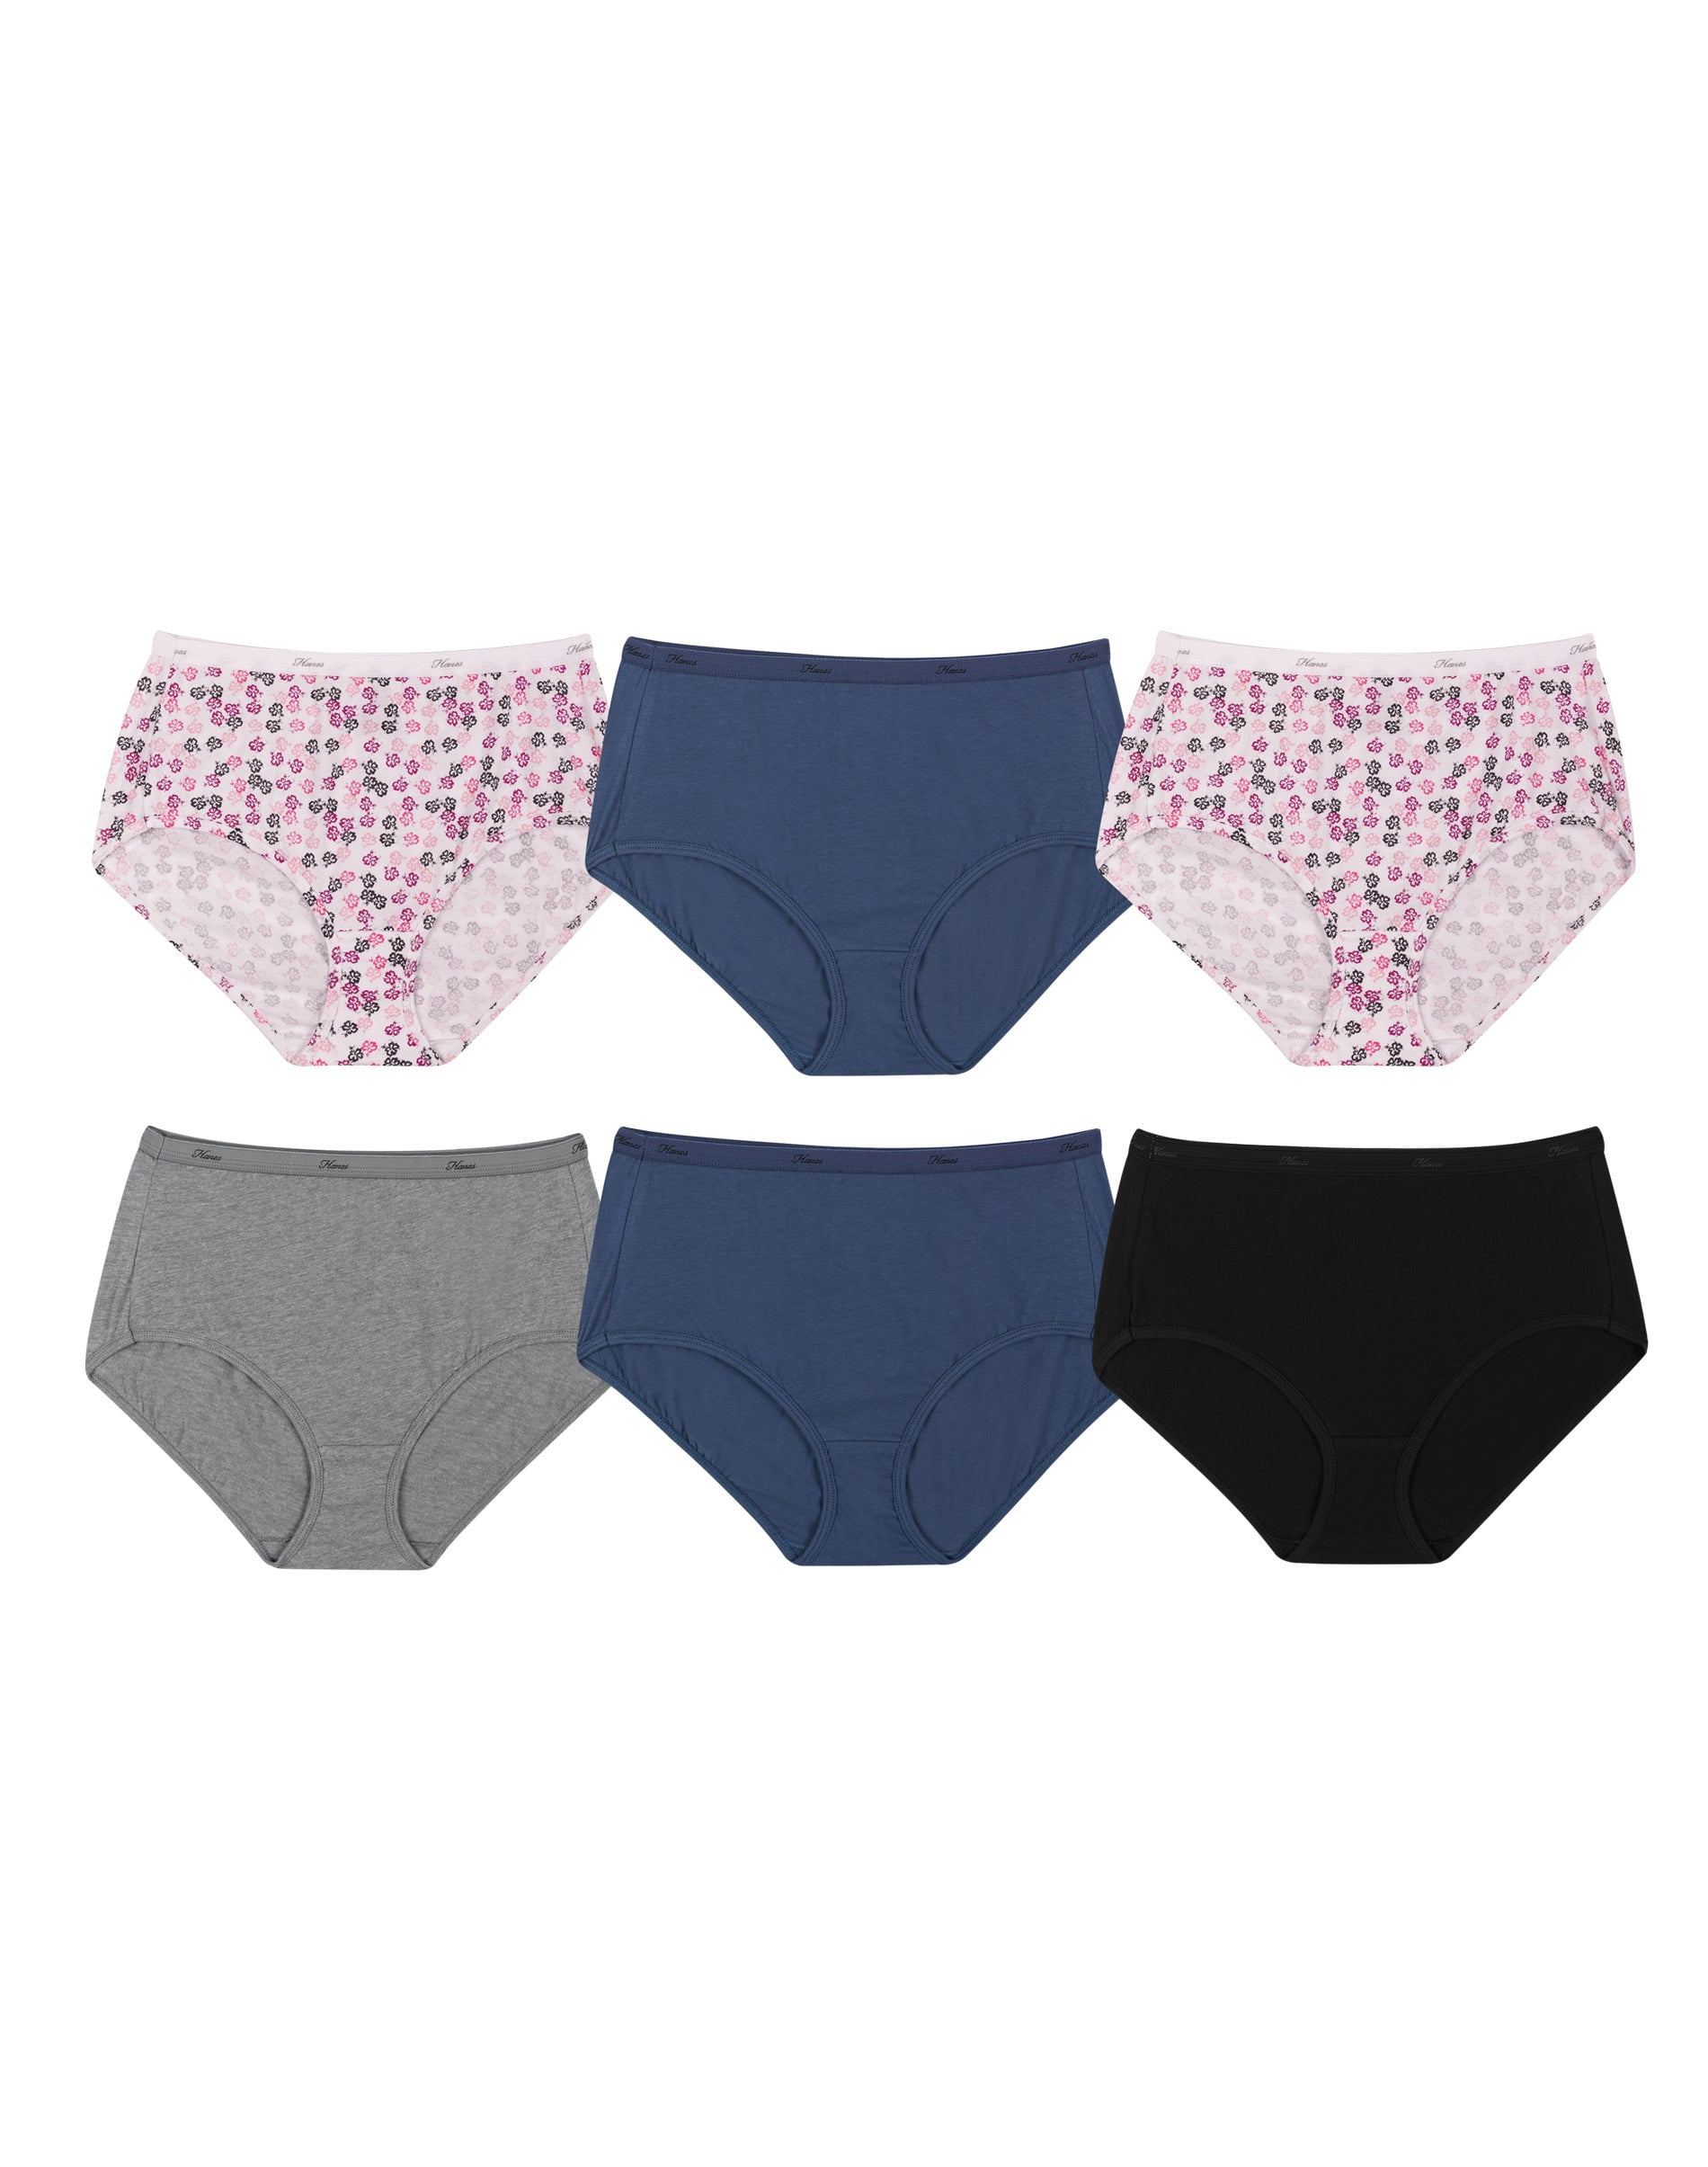 Hanes Women's High-Waisted Brief Underwear Pack, Moisture-Wicking, 6-Pack  Fashion 7